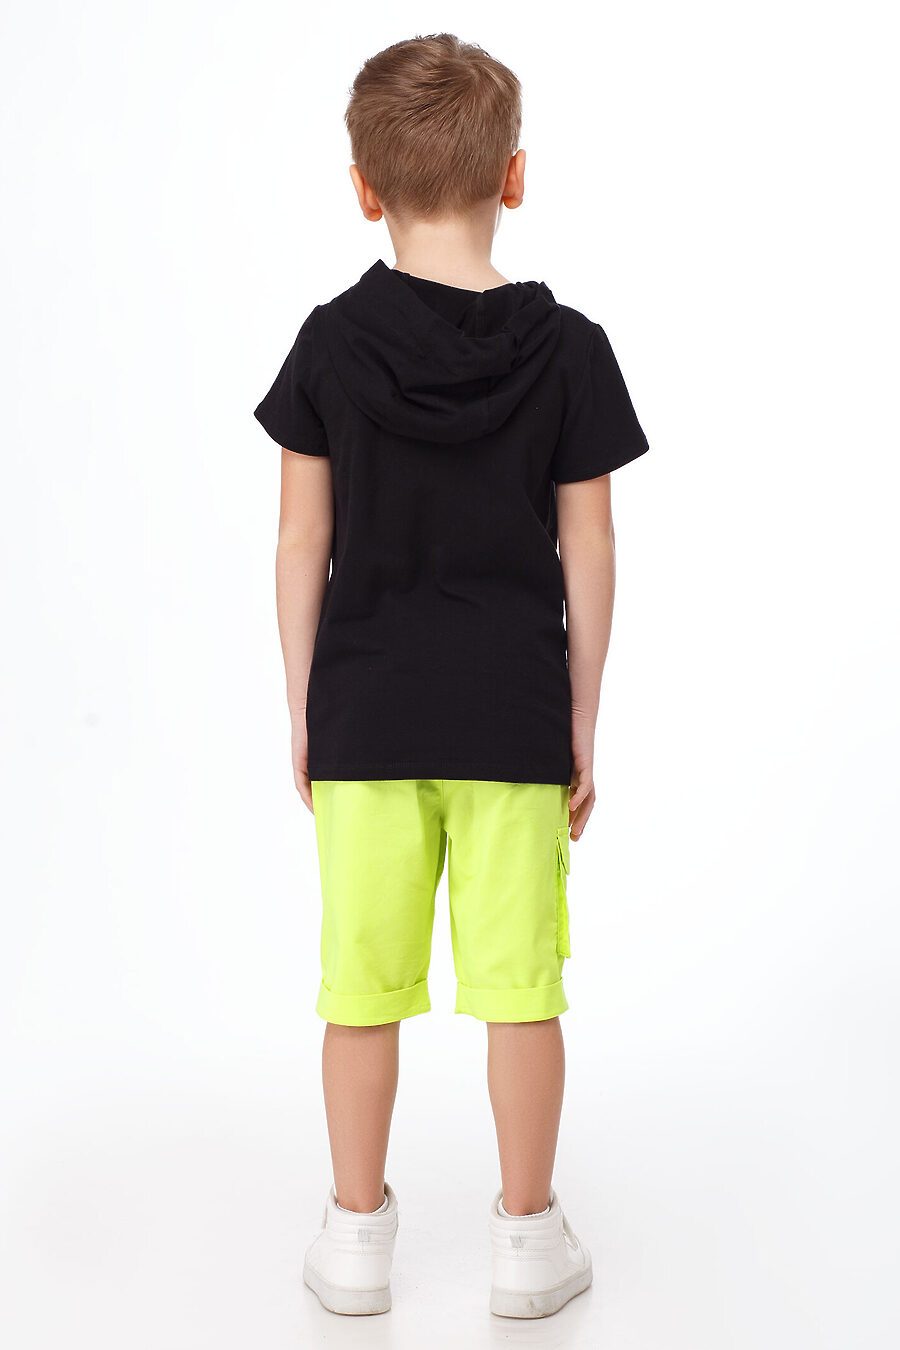 Джемпер для мальчиков PANDA 664678 купить оптом от производителя. Совместная покупка детской одежды в OptMoyo